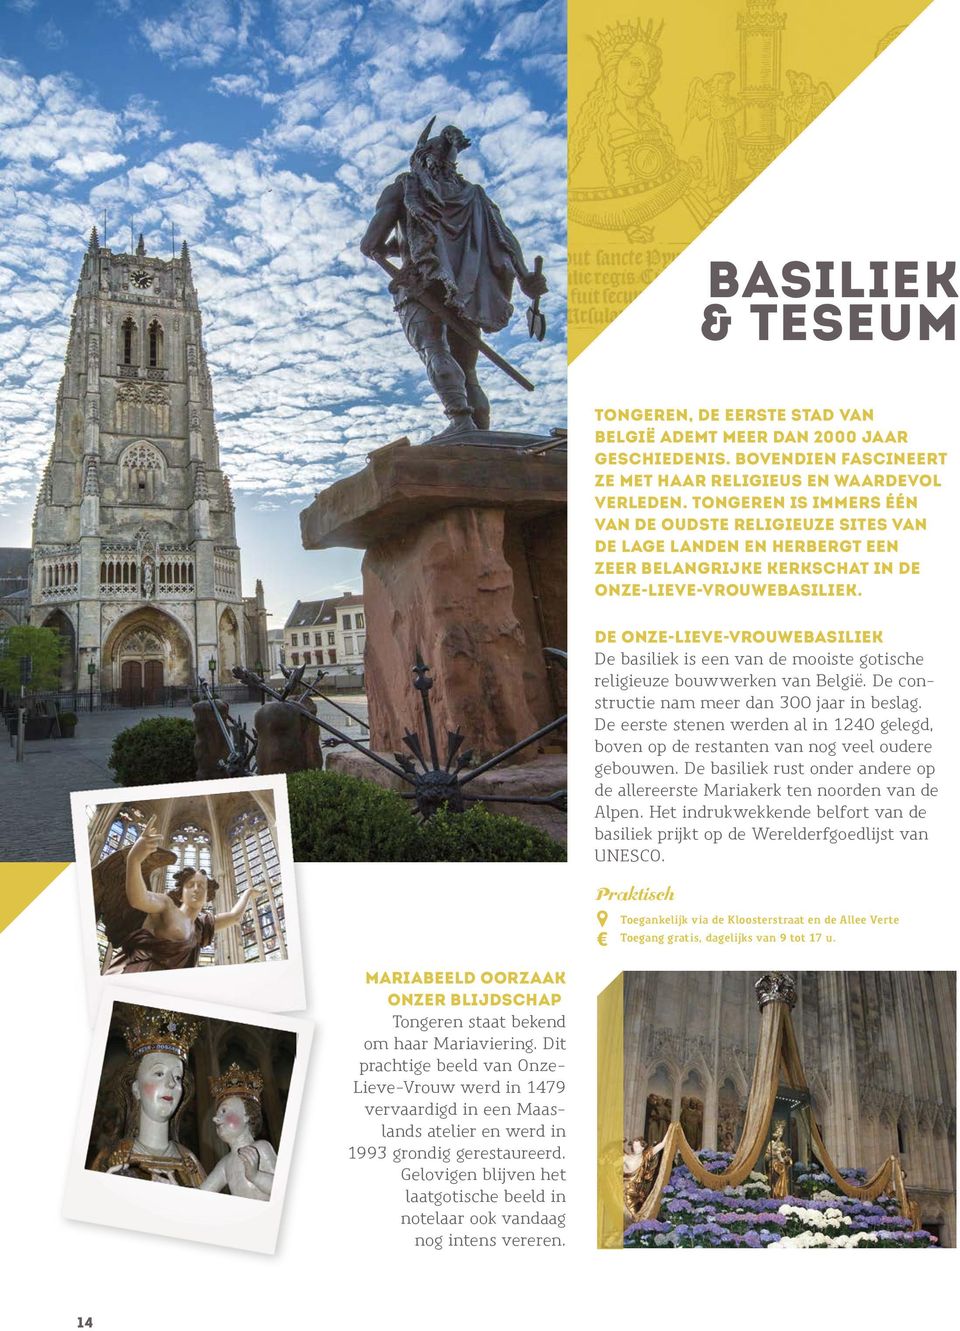 De Onze-Lieve-Vrouwebasiliek De basiliek is een van de mooiste gotische religieuze bouwwerken van België. De constructie nam meer dan 300 jaar in beslag.